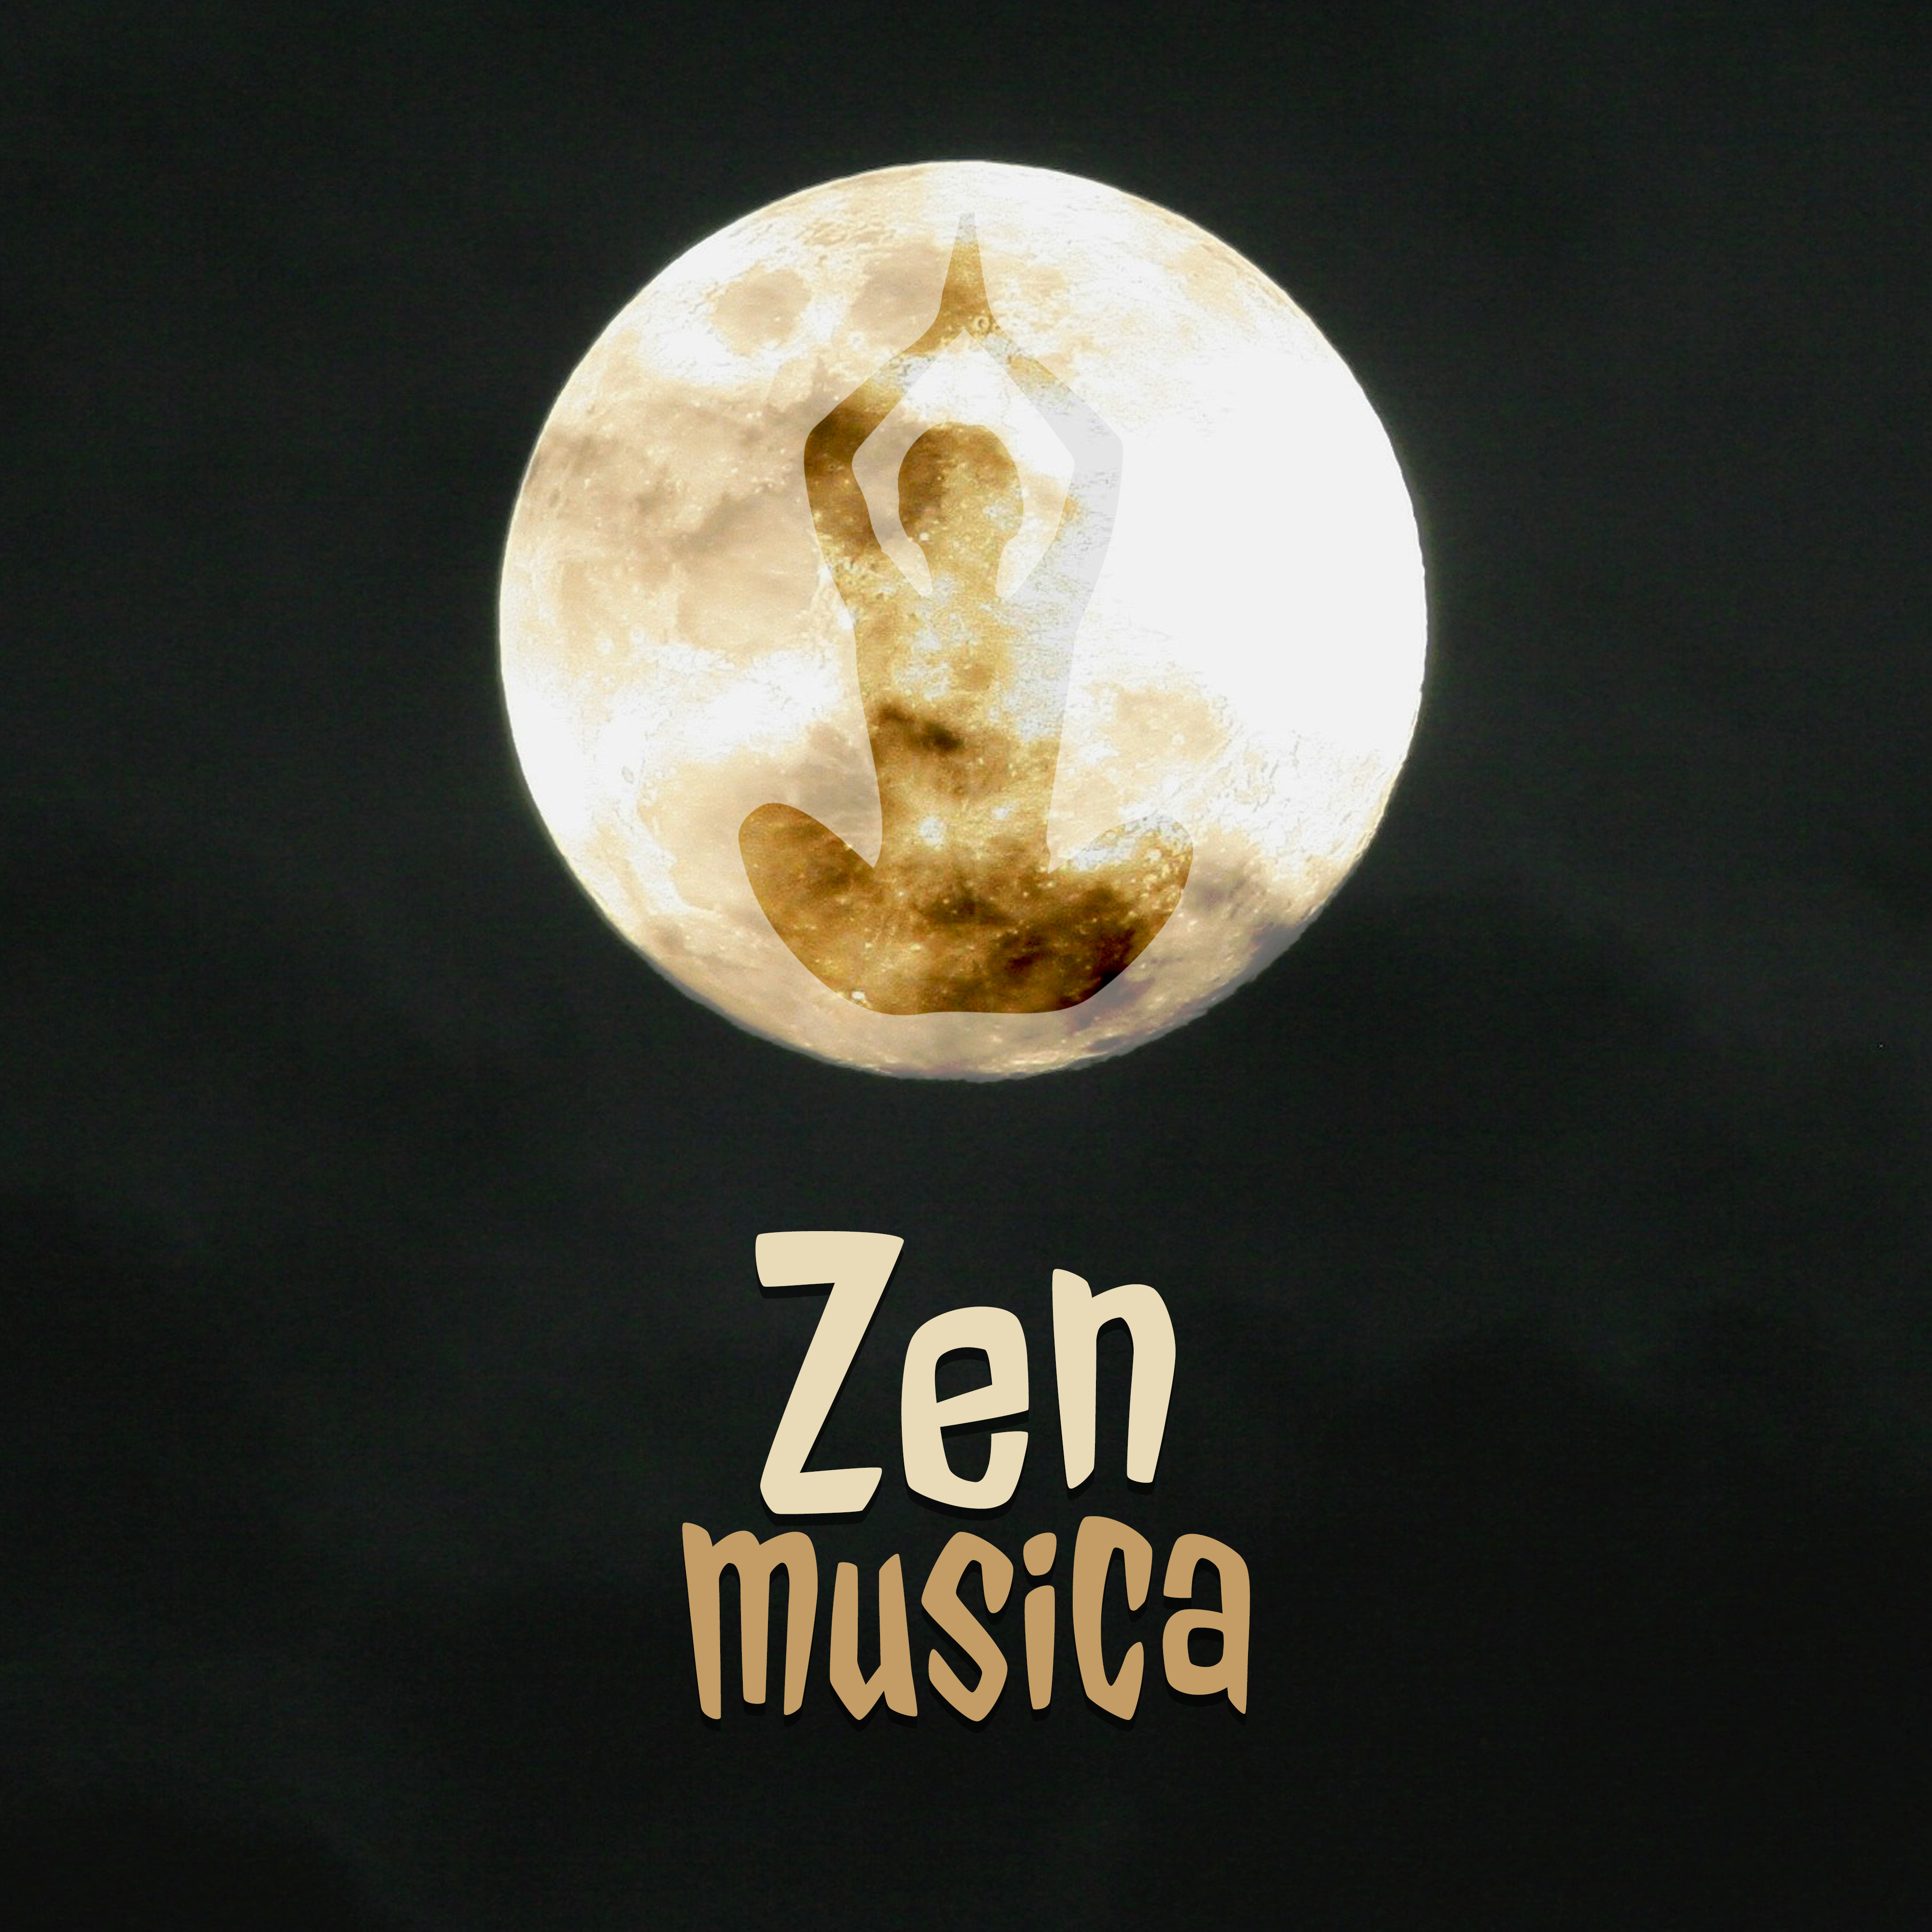 Zen Musica - Nueva Era Musica Para Dormir, Relaxamento, Meditacion, Masaje, Canciones Relajantes